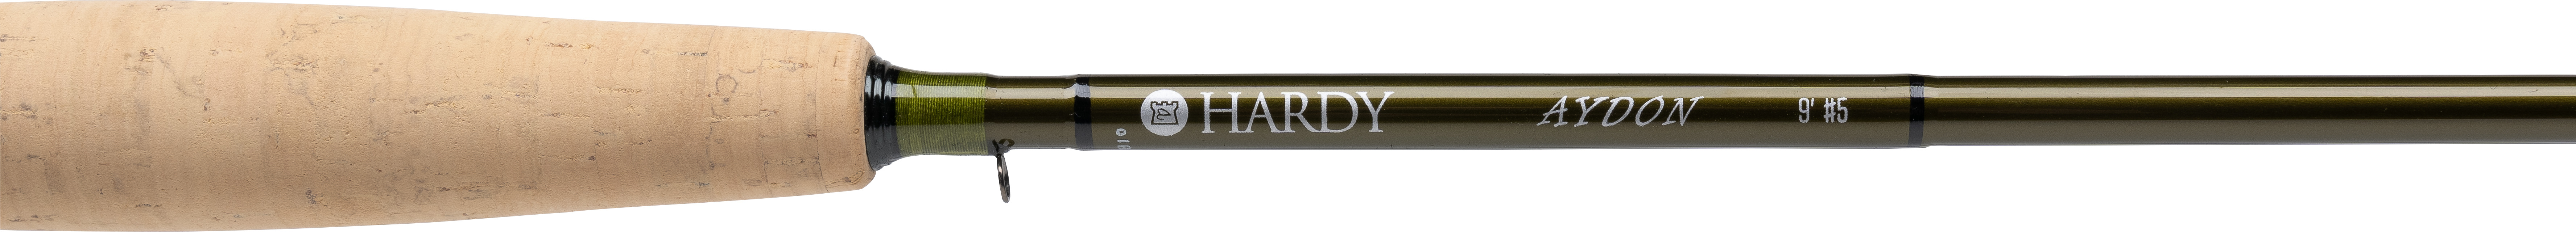 Hardy Aydon Fly Rod - Tacklestream